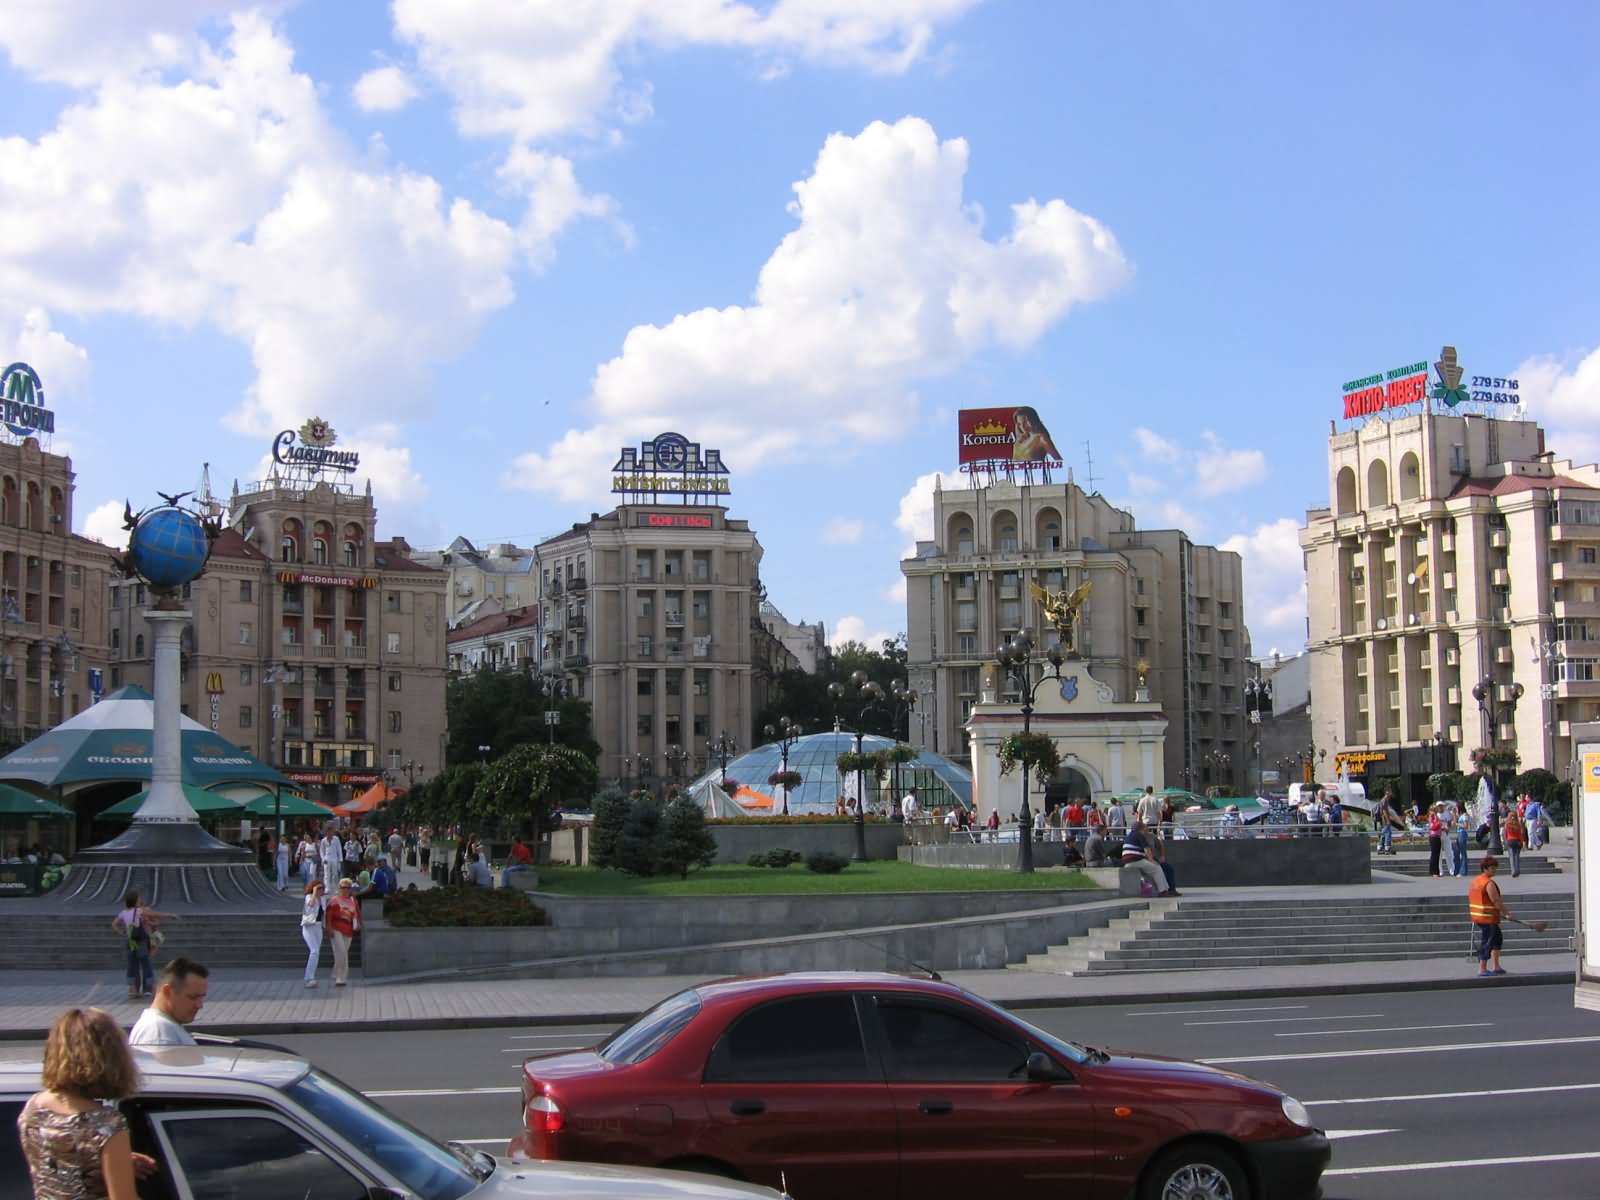 Maidan Nezalezhnosti Square In Kiev, Ukraine